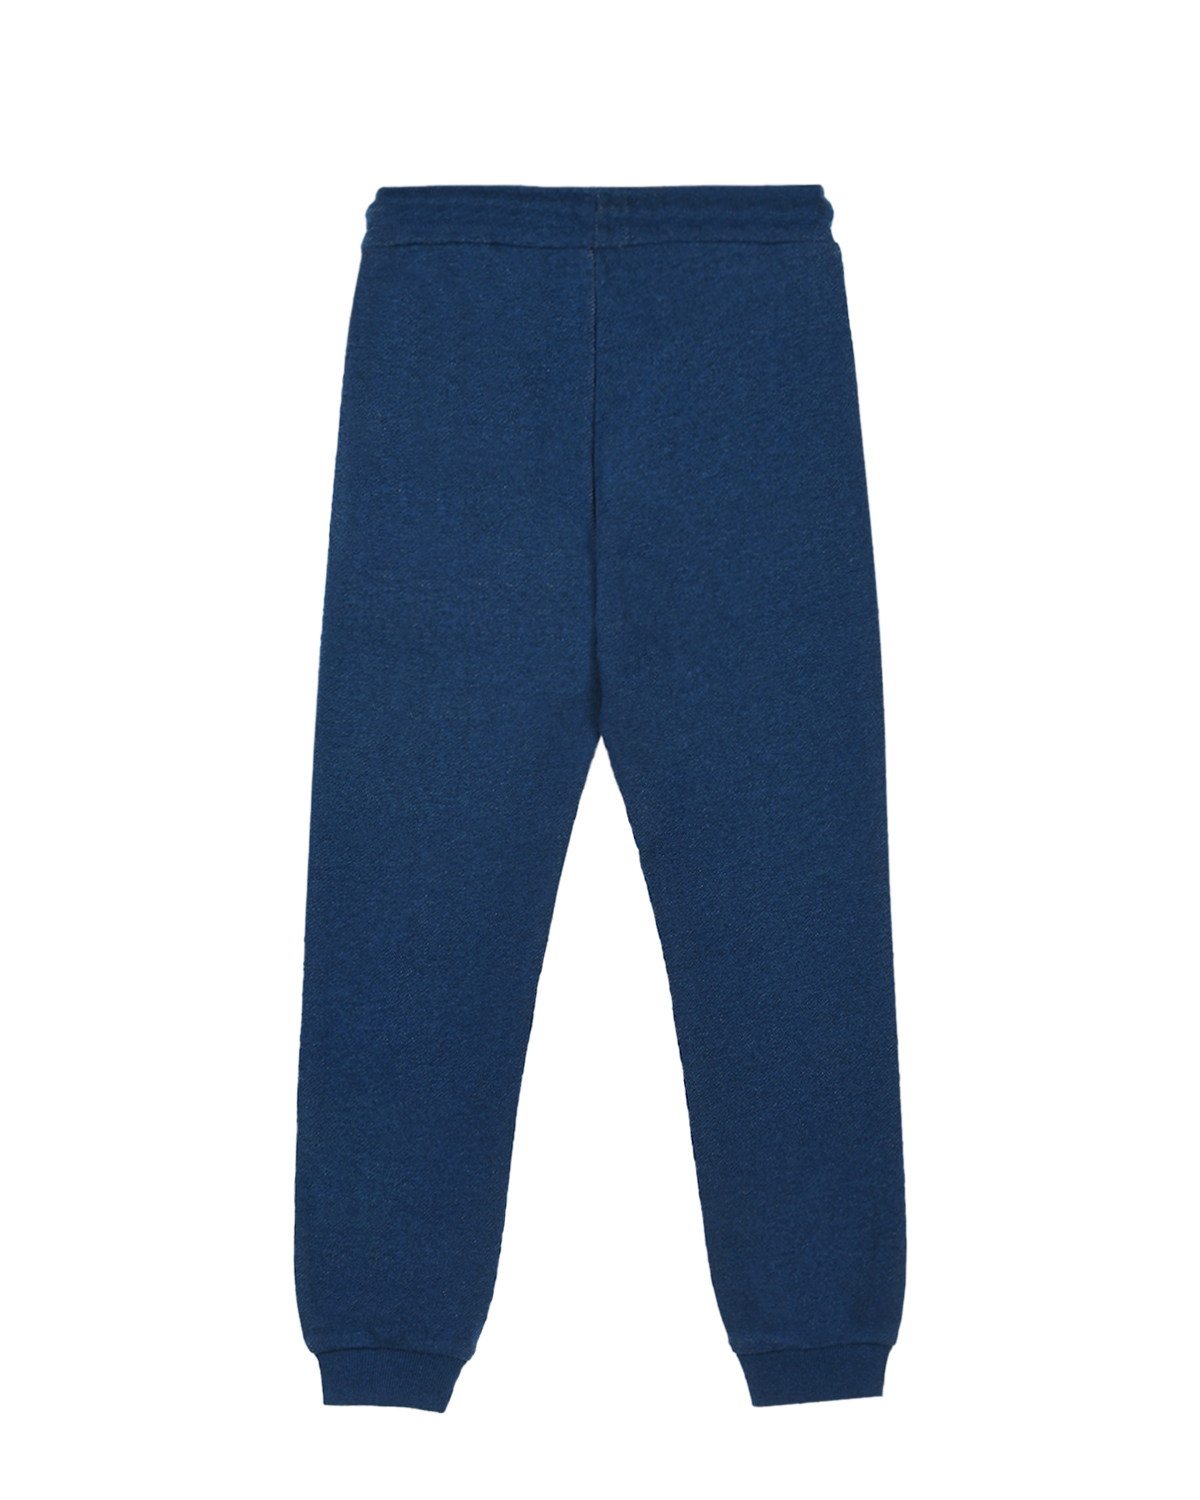 Синие спортивные брюки с логотипом Marc Jacobs (The) детские, размер 128, цвет синий Синие спортивные брюки с логотипом Marc Jacobs (The) детские - фото 2